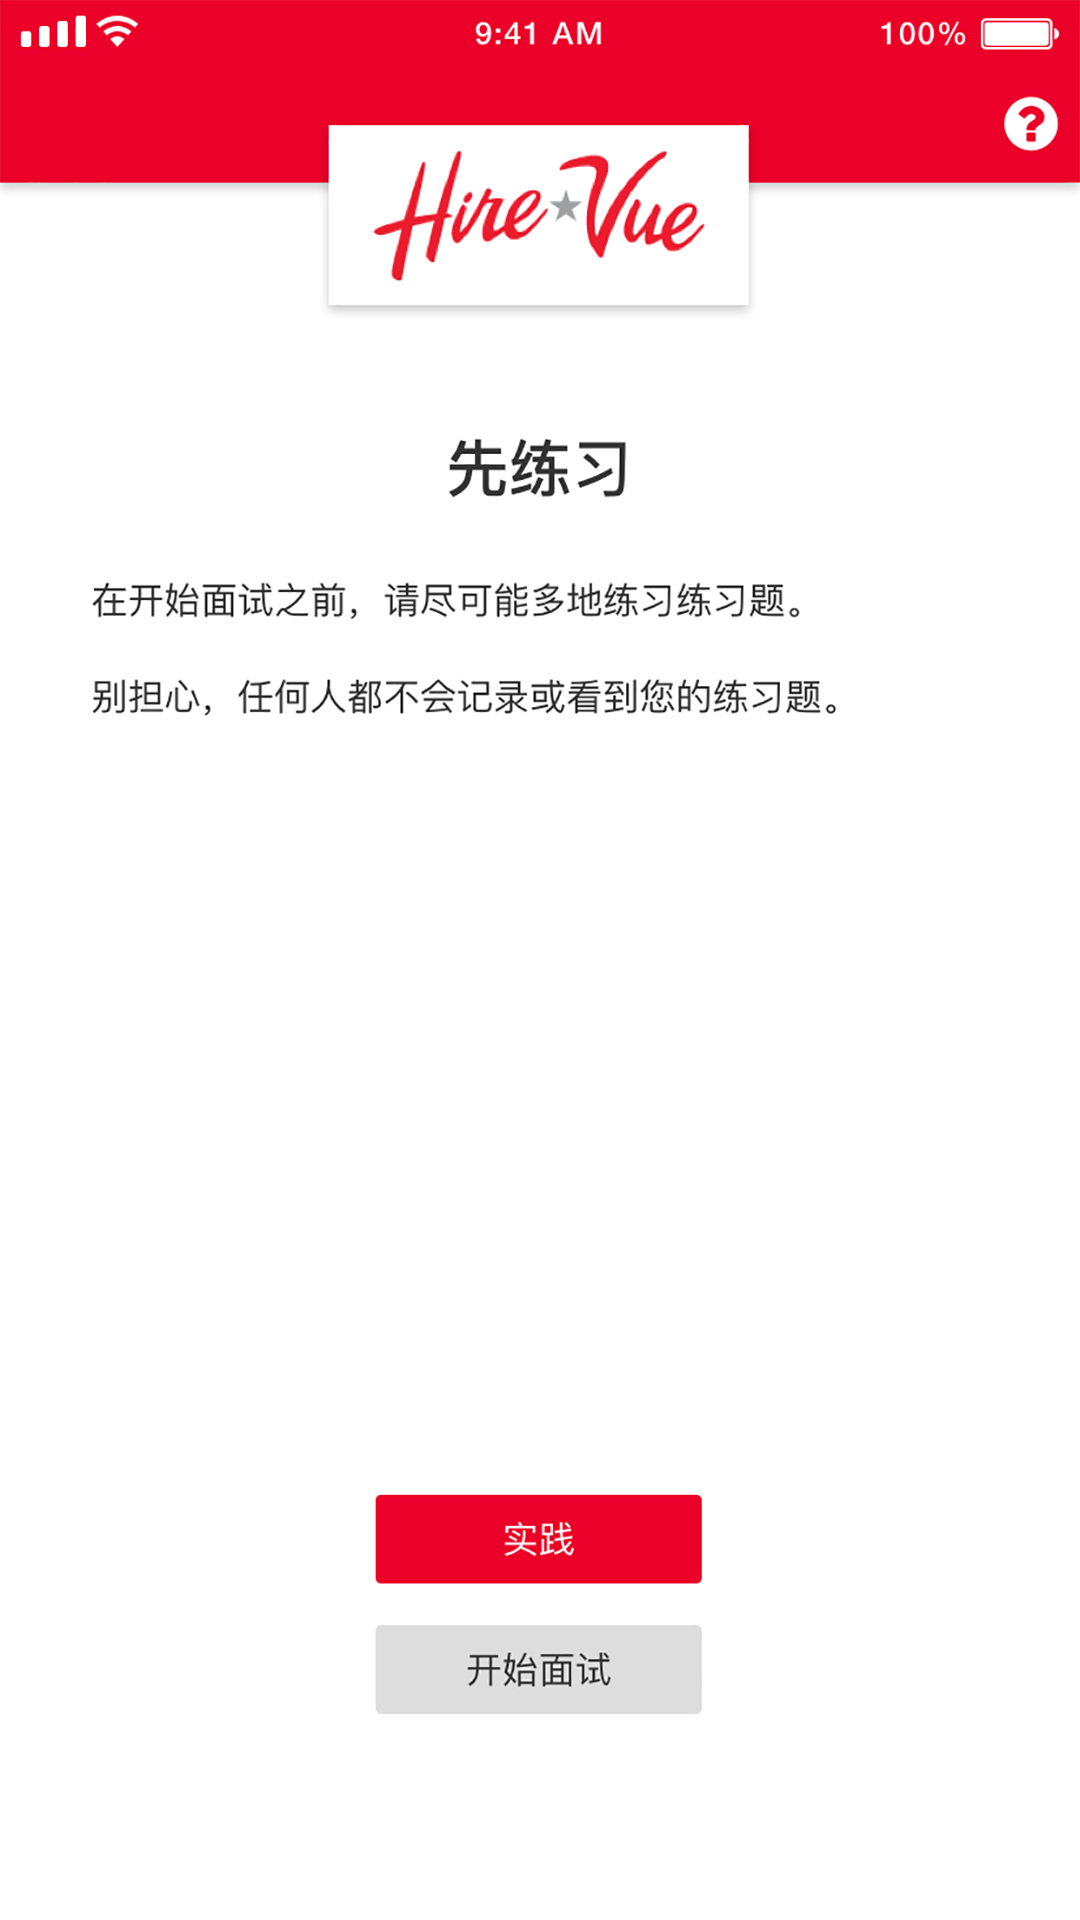 HireVue面试中文版app图片1